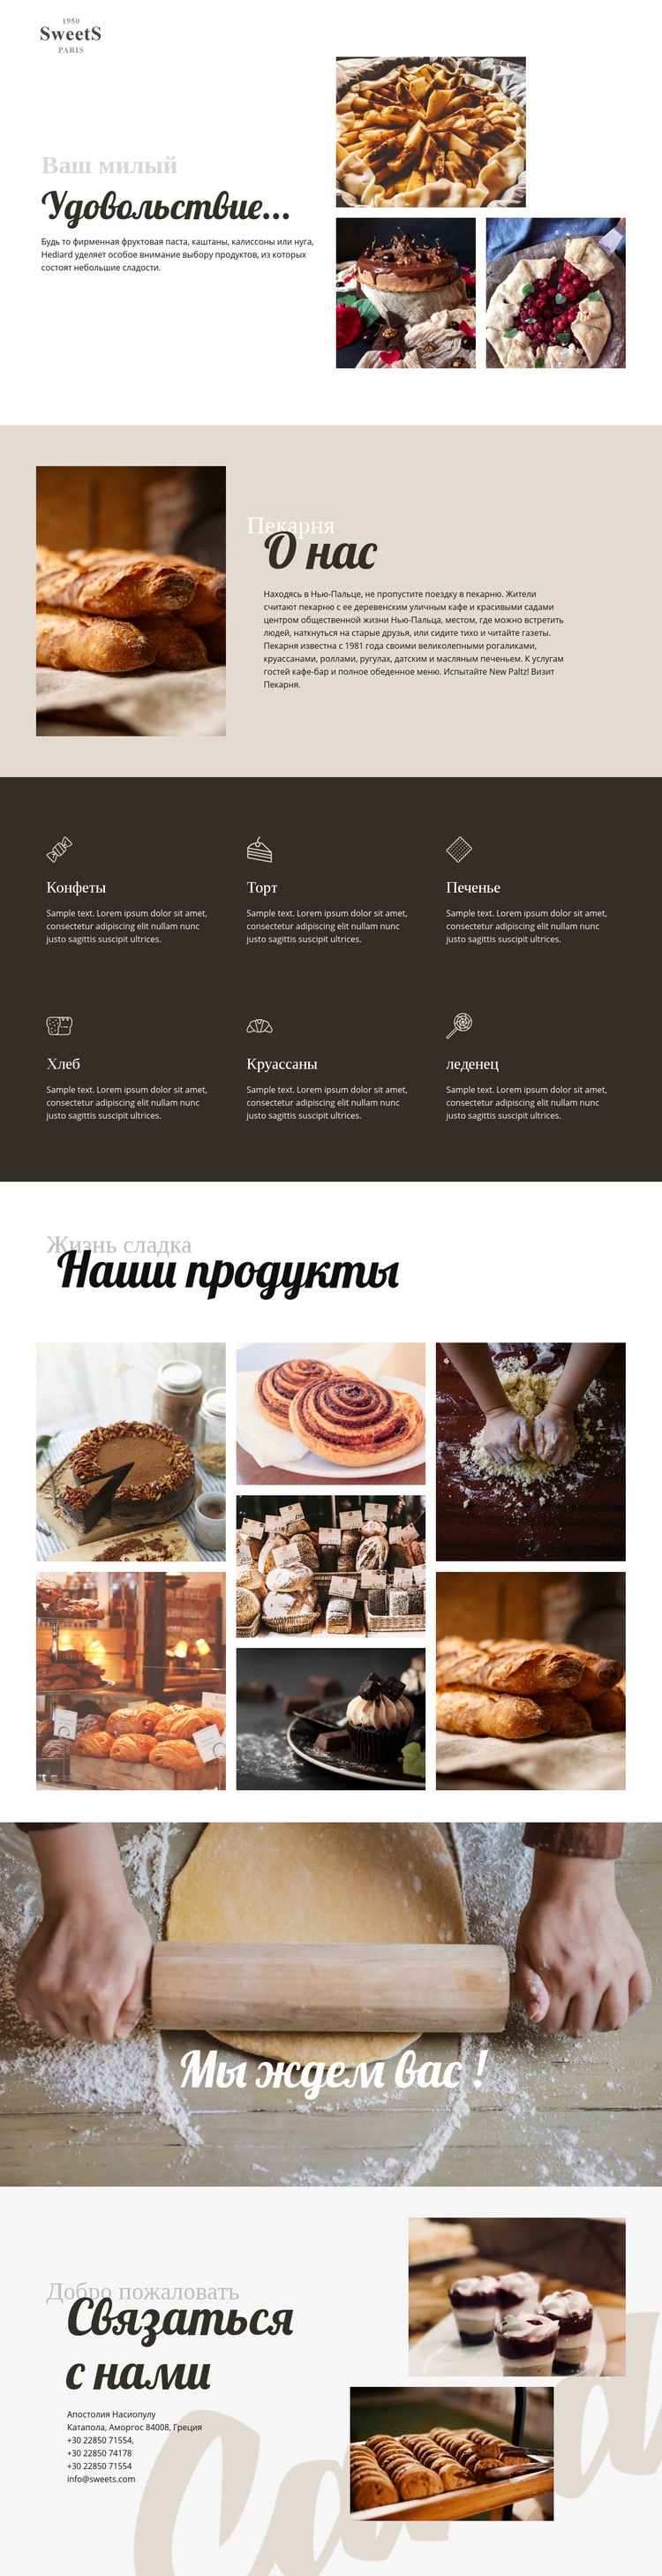 Торты и выпечка CSS шаблон